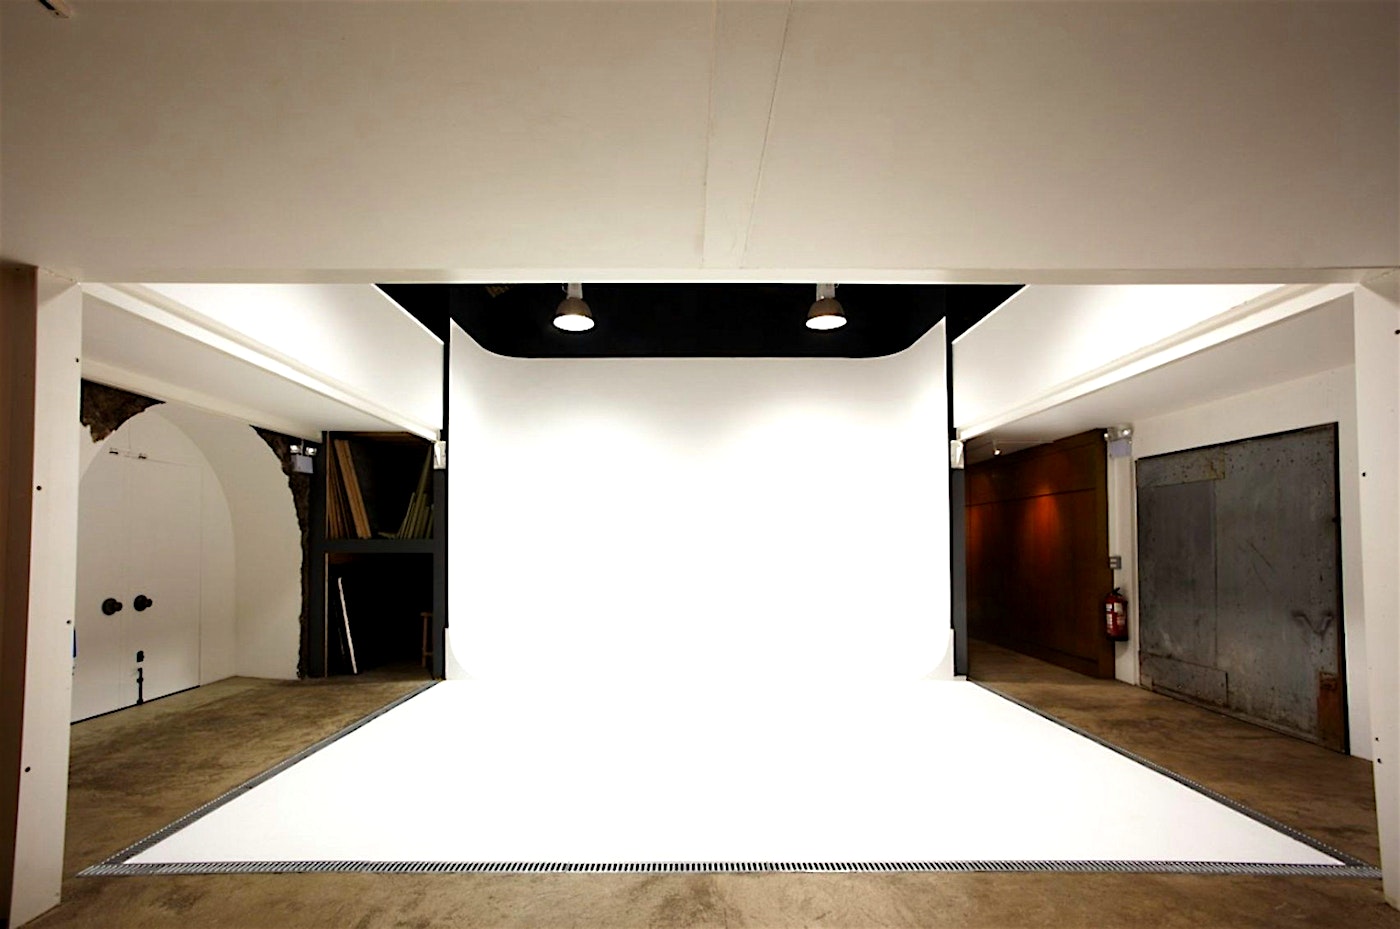 blank canvas canvas works hackney venue london